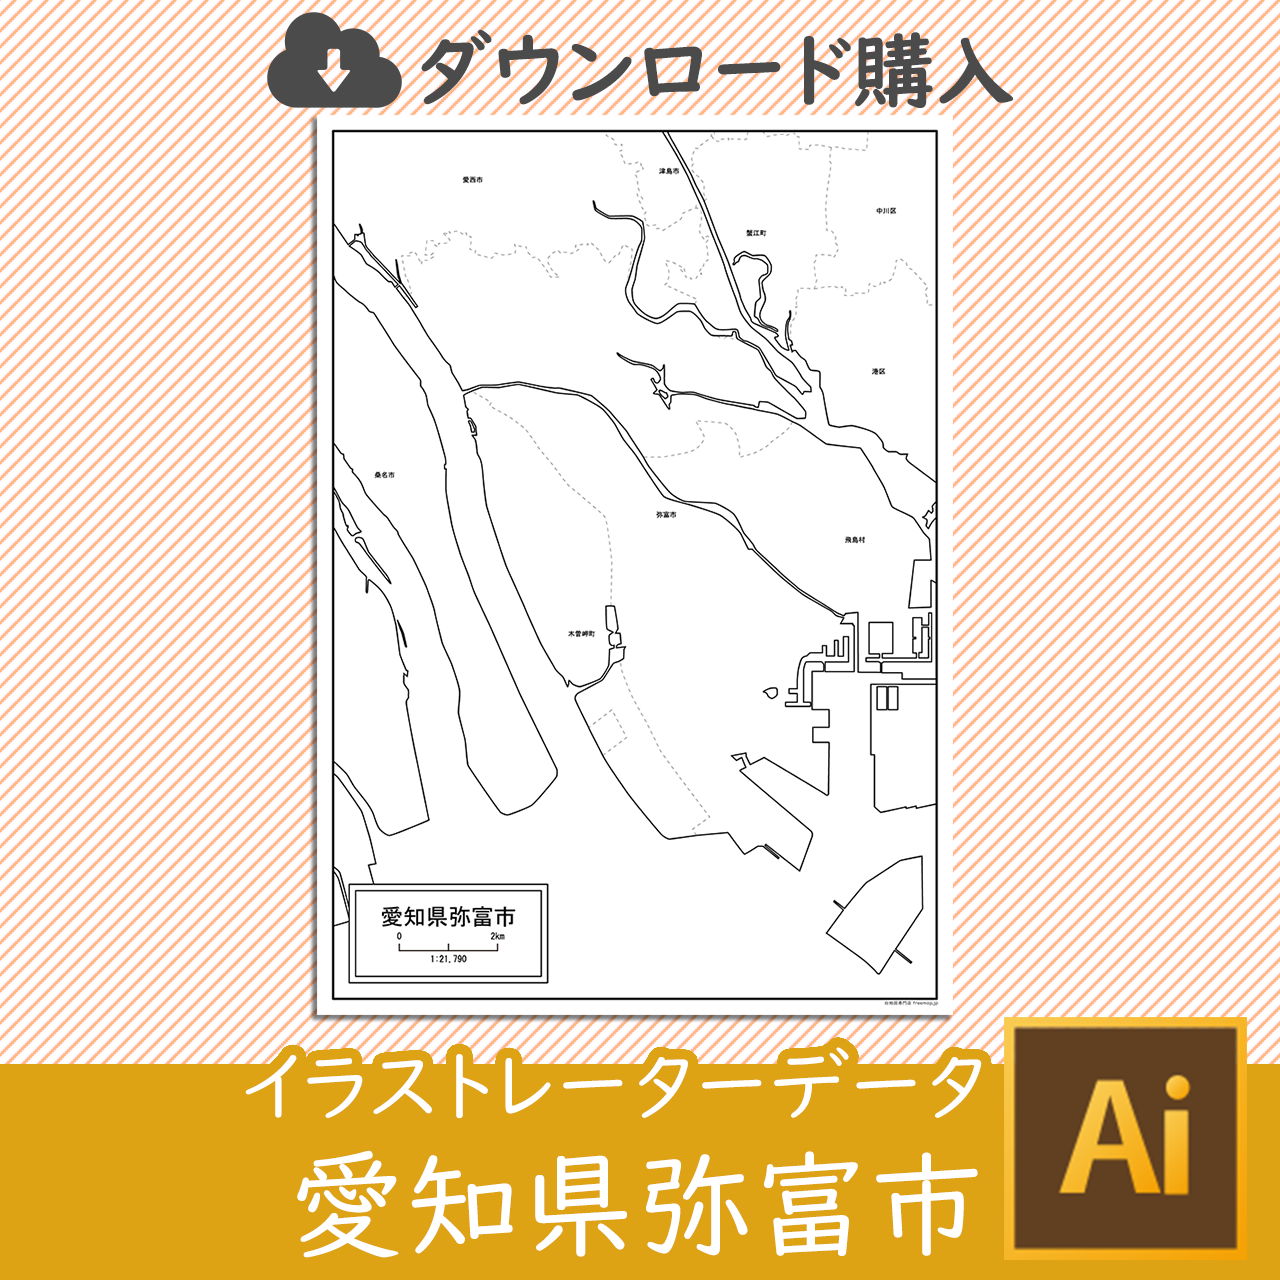 弥富市の白地図のサムネイル